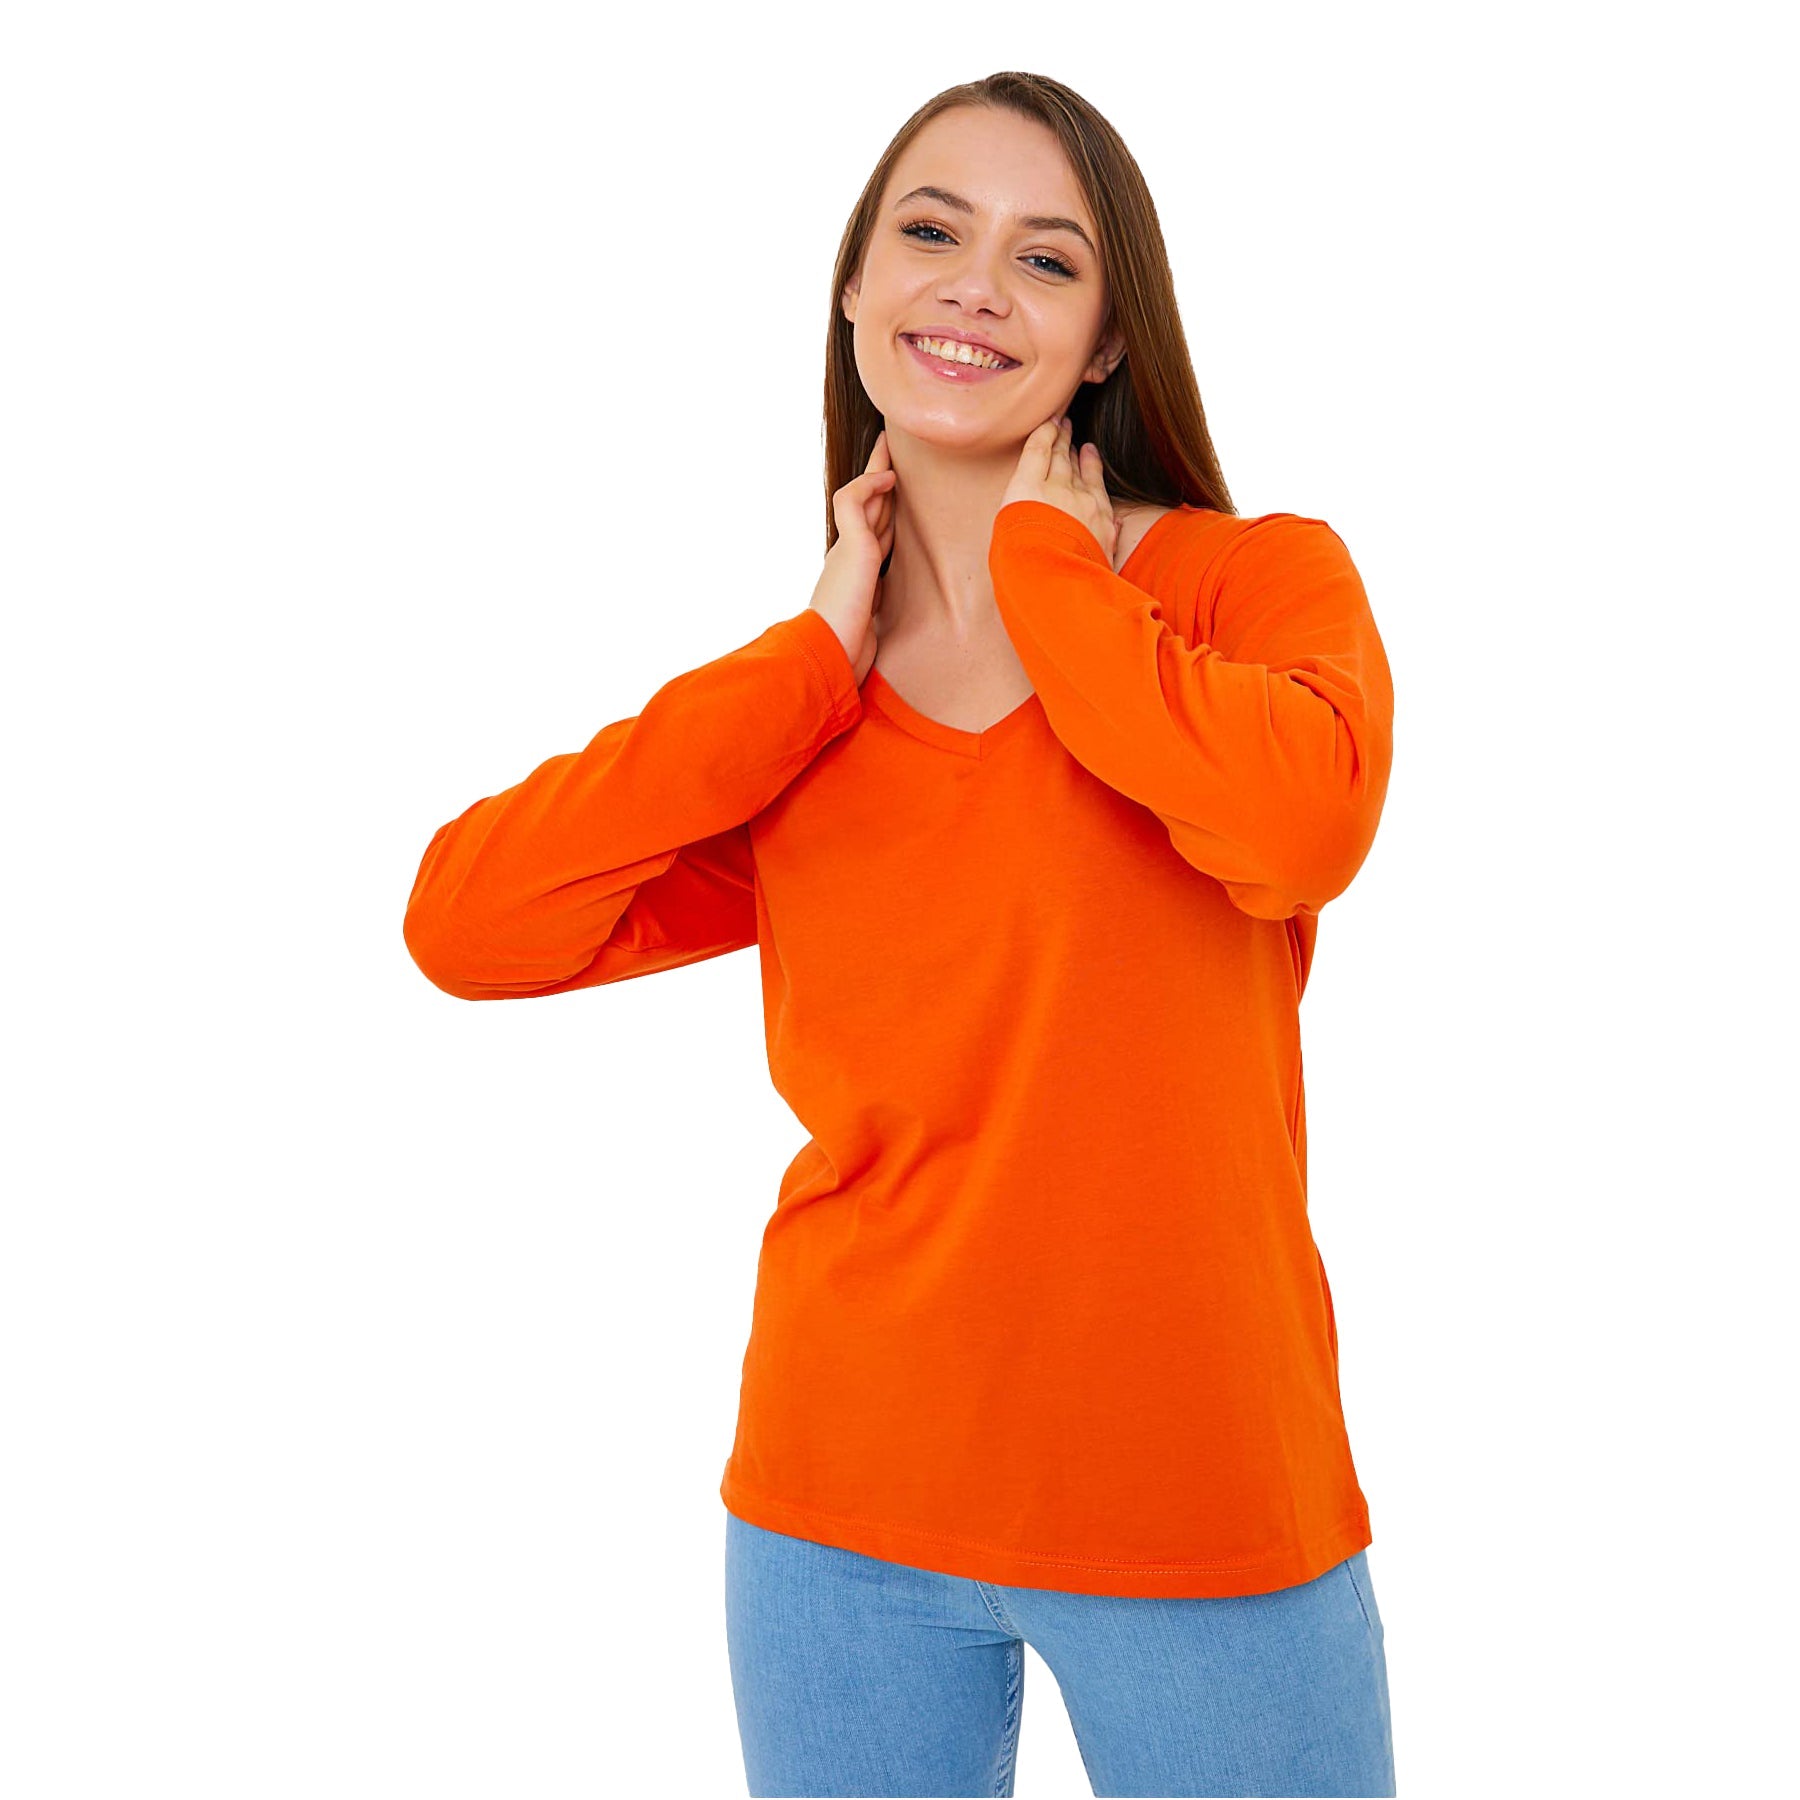 Buy orange Long Sleeve V-Neck Shirts for Women &amp; Girls - Colorful Pima Cotton